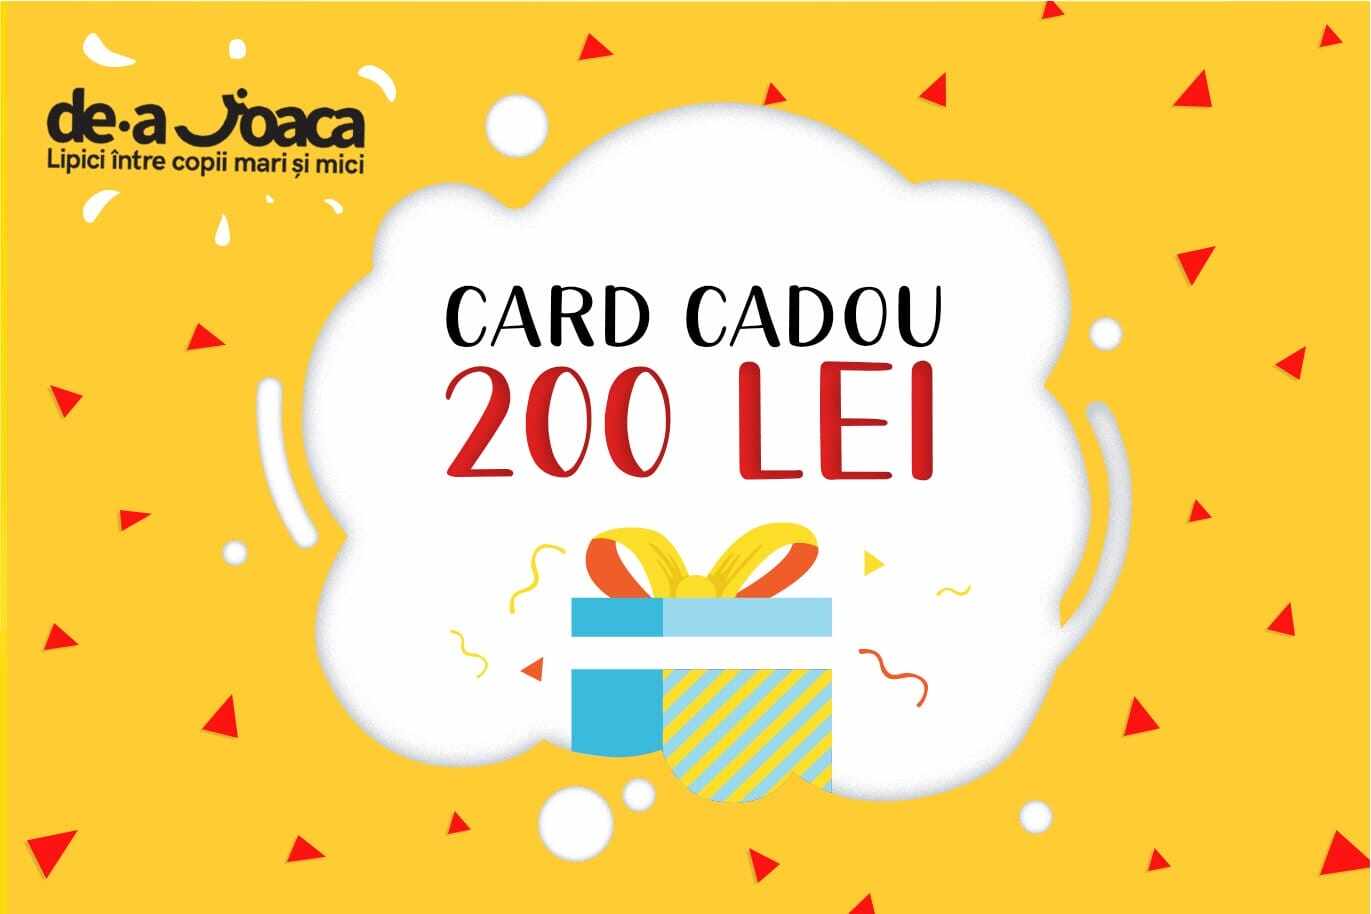 CARD CADOU 200